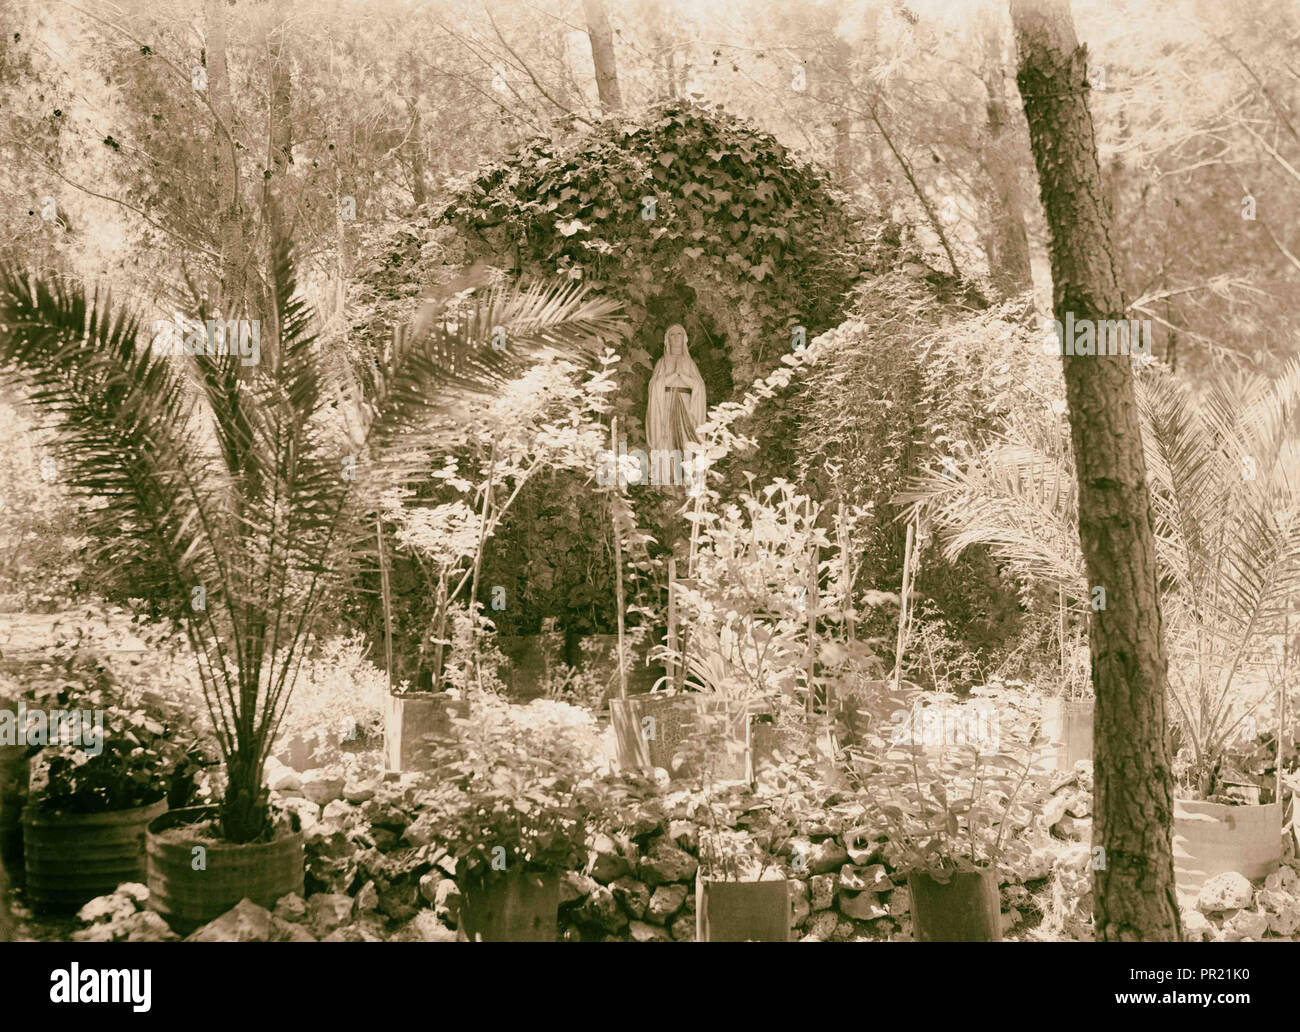 Santuario en alemán hospicio jardín, Jerusalén. 1940, Jerusalén, Israel Foto de stock